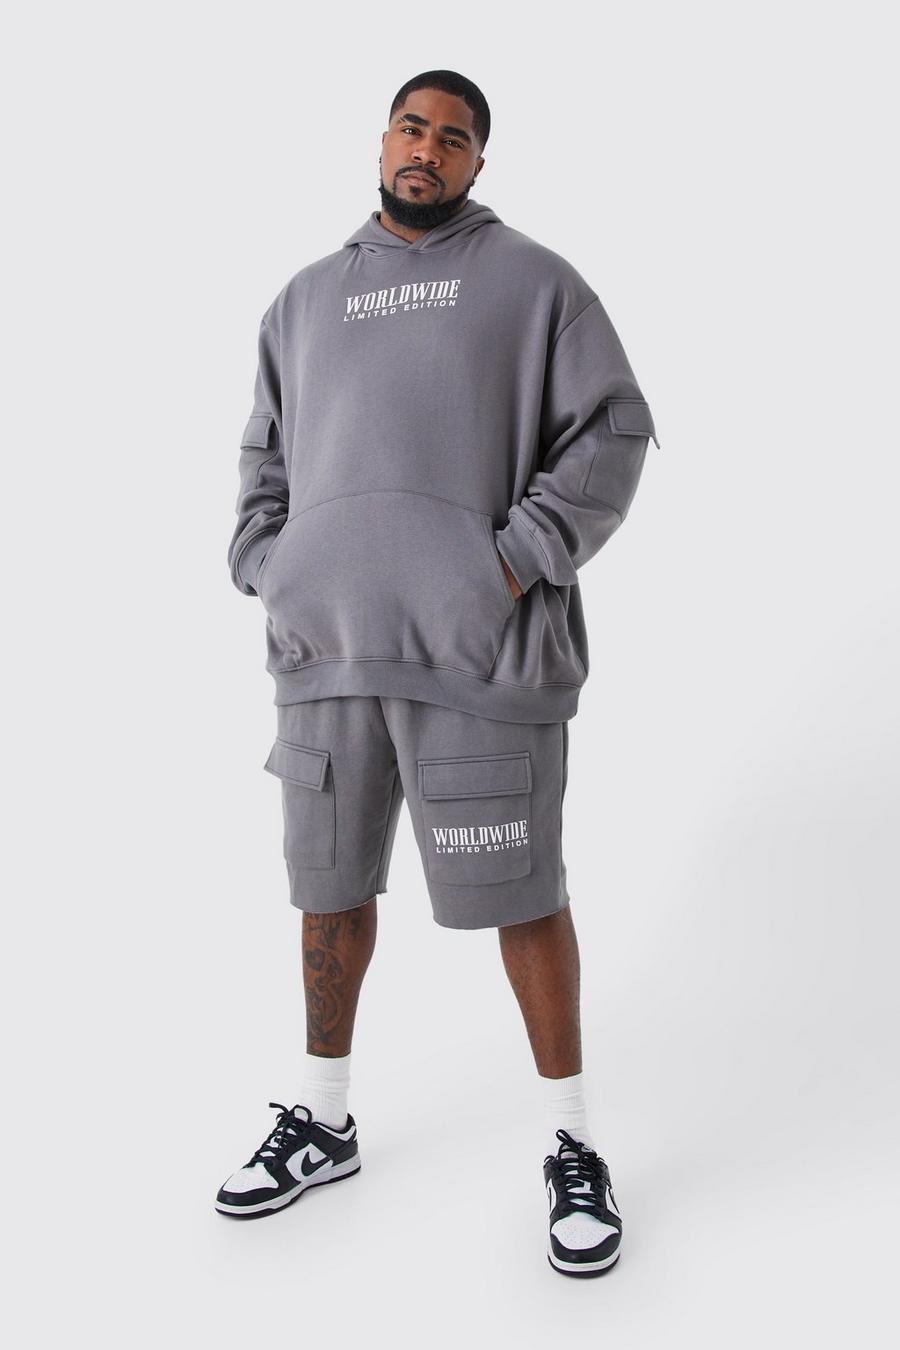 Grande taille - Survêtement cargo avec hoodie et short, Charcoal